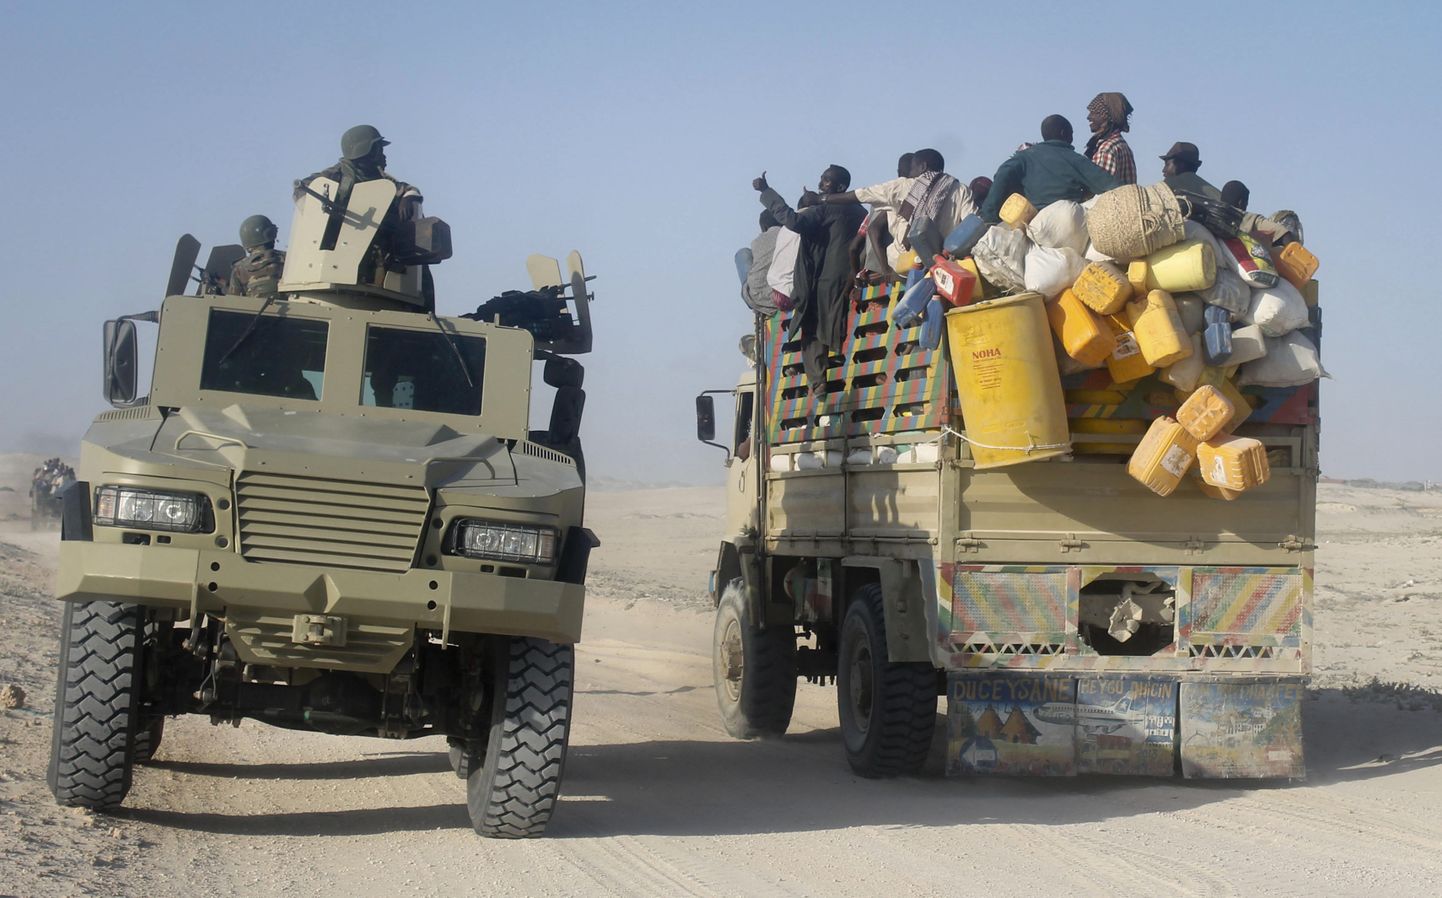 Somaalia tsiviilelanikud lahkuvad lahingute piirkonnast, möödudes teel Aafrika Liidu sõduritest.